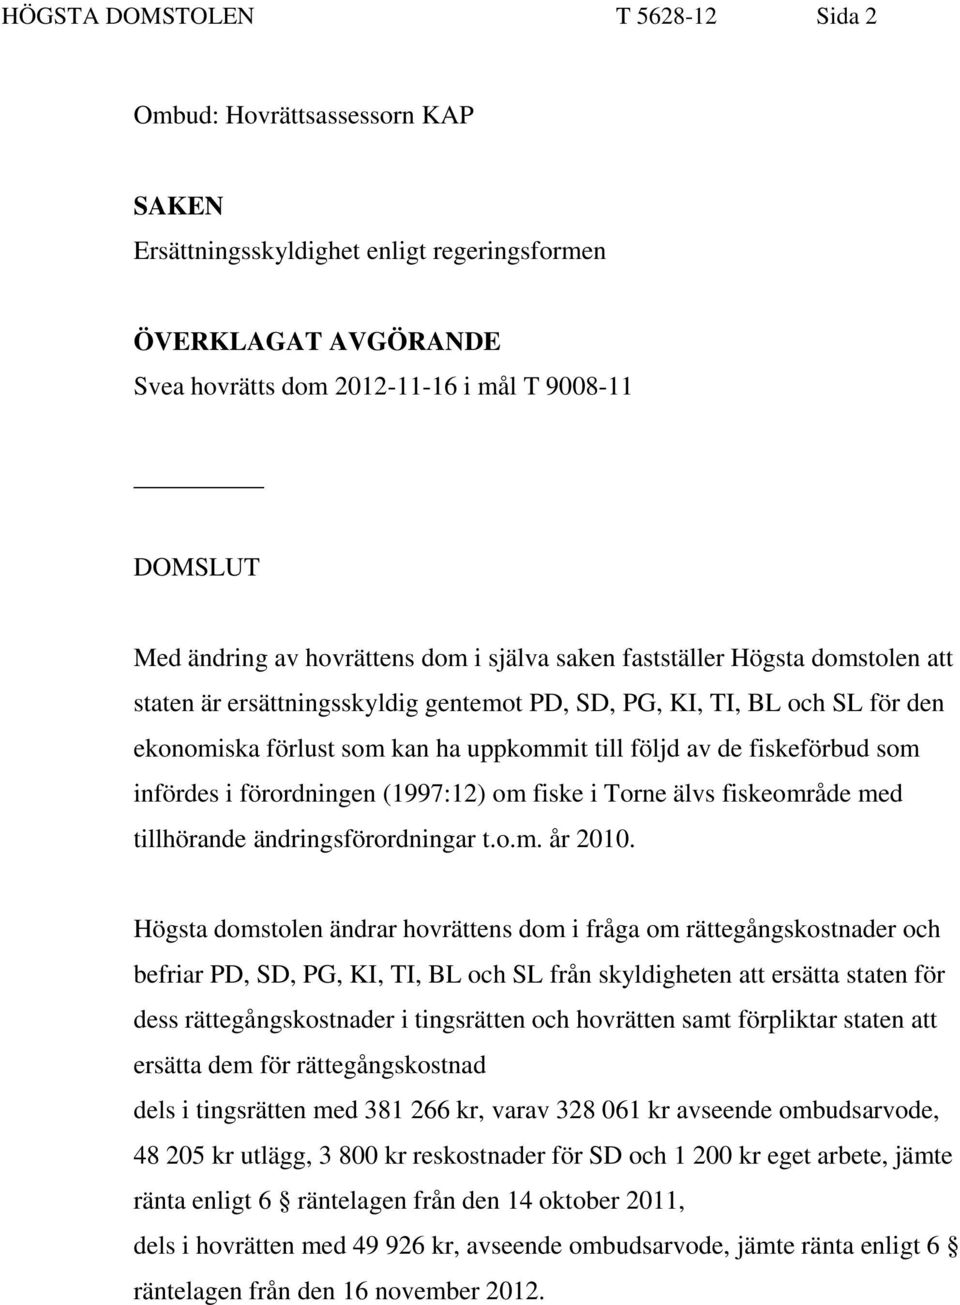 fiskeförbud som infördes i förordningen (1997:12) om fiske i Torne älvs fiskeområde med tillhörande ändringsförordningar t.o.m. år 2010.